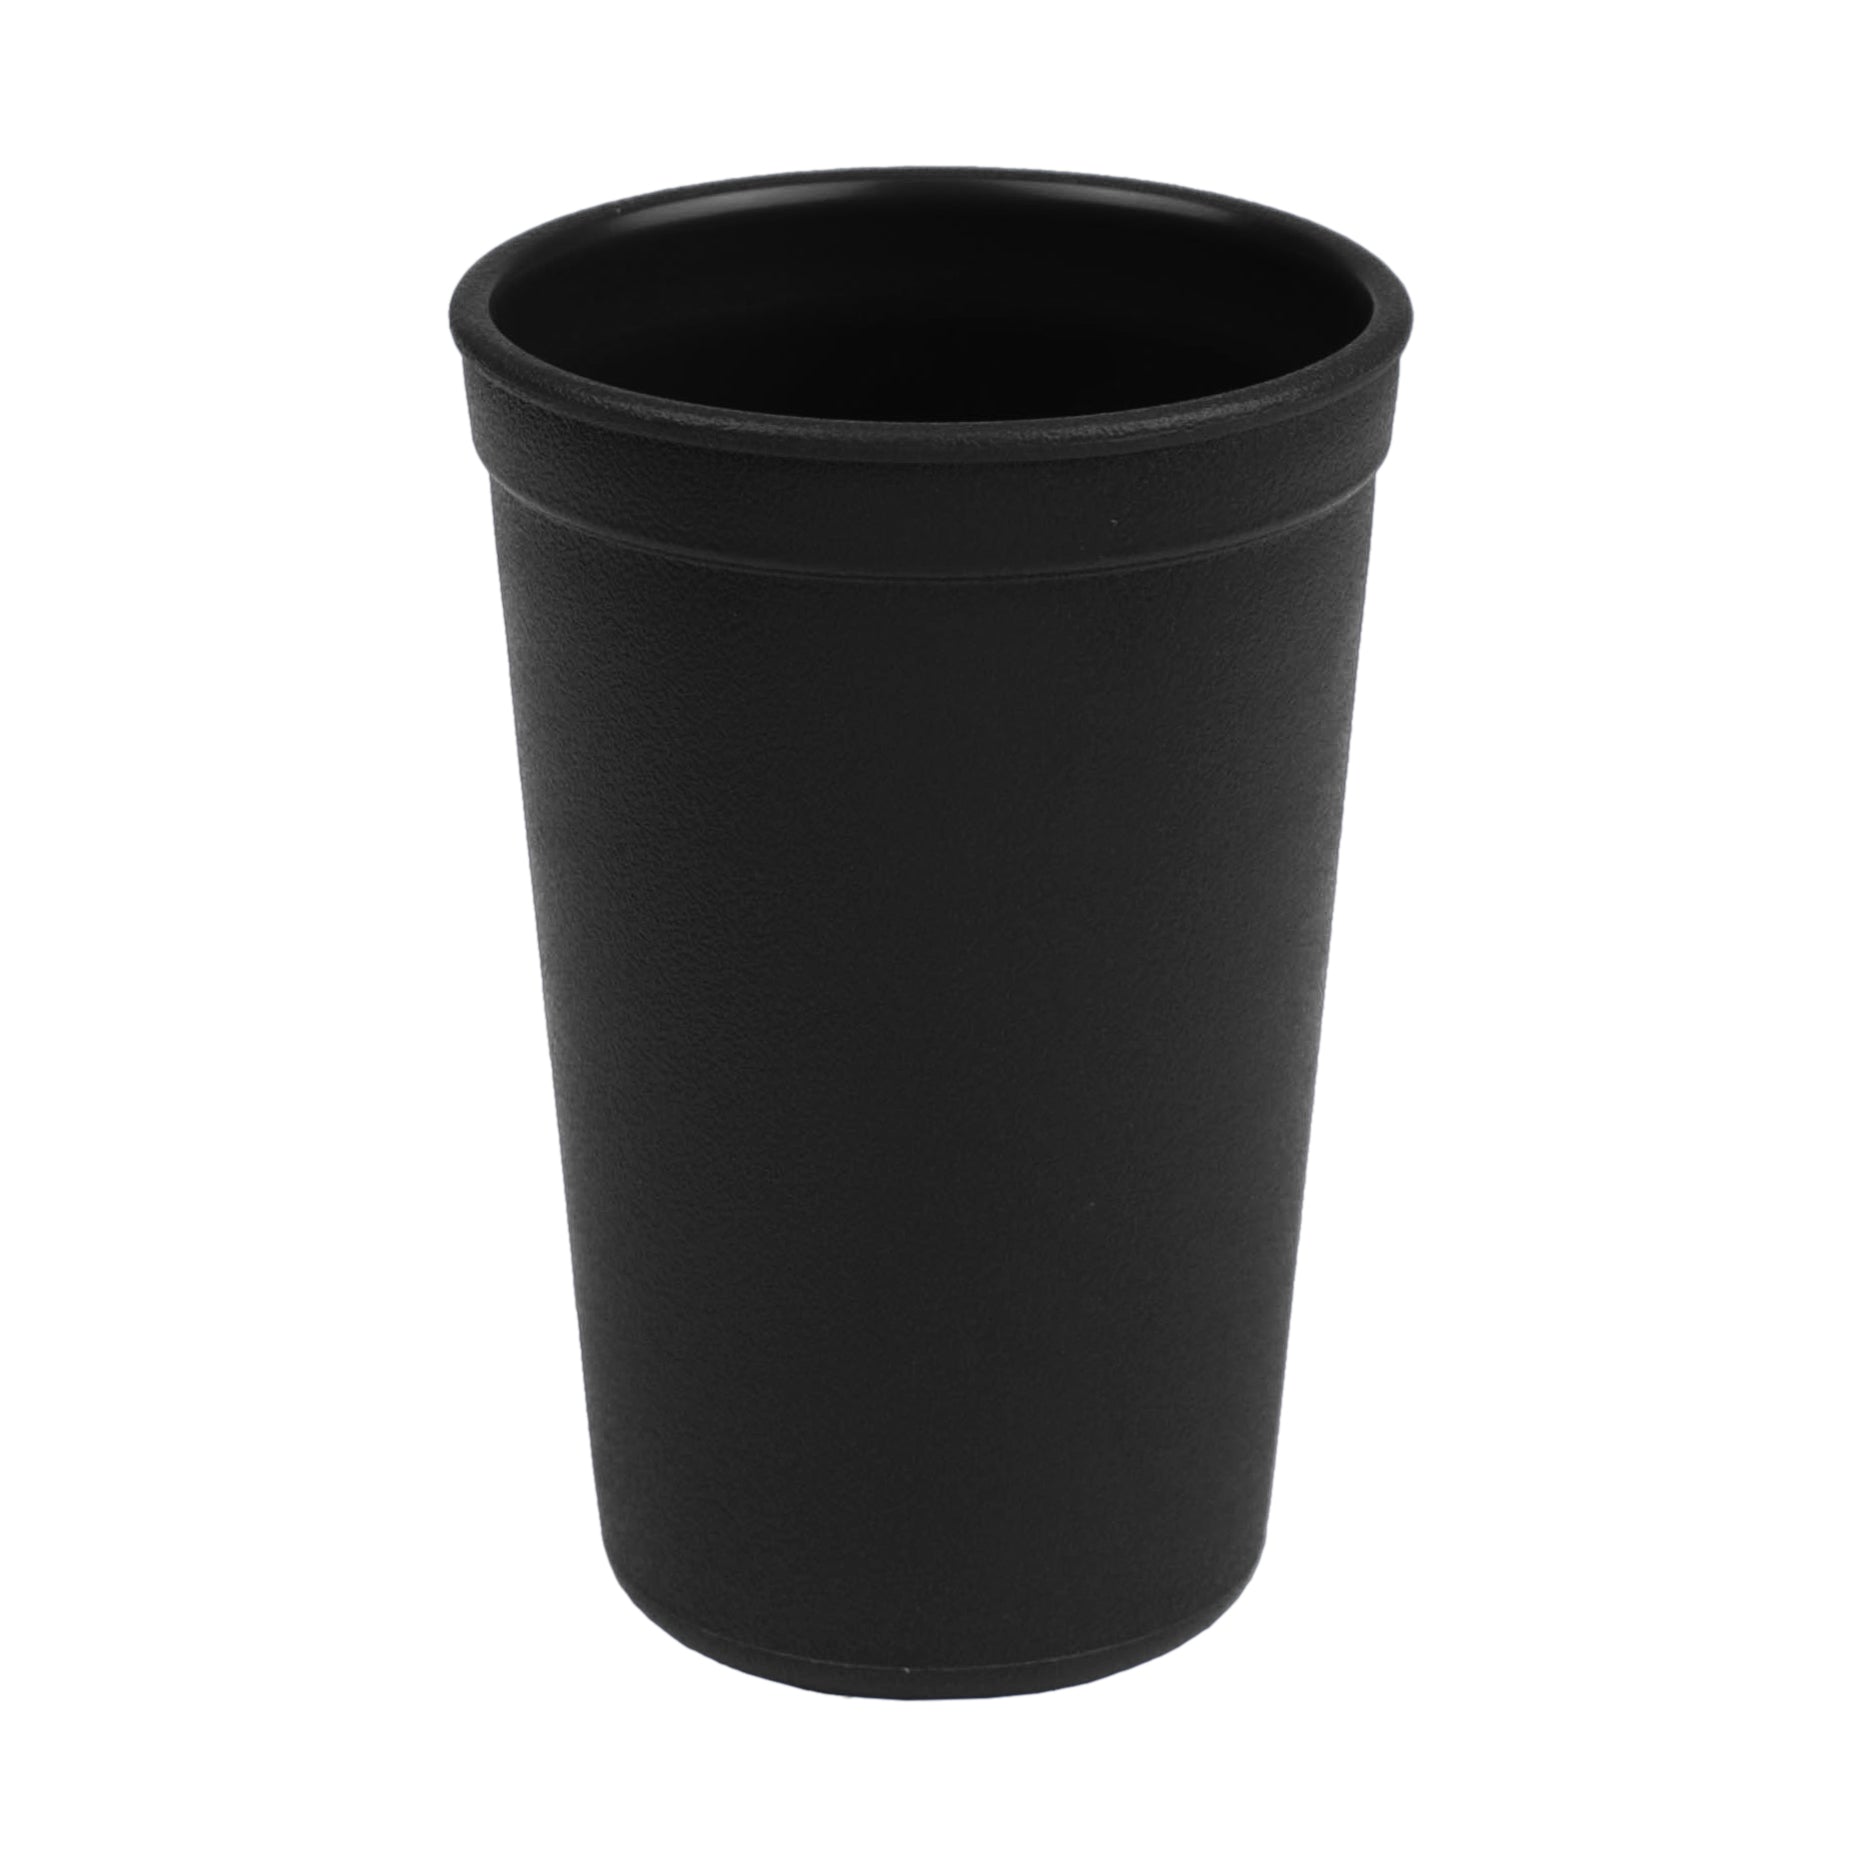 https://sterlingandmeshop.com/cdn/shop/products/Black_Drinking_Cups.jpg?v=1592681219